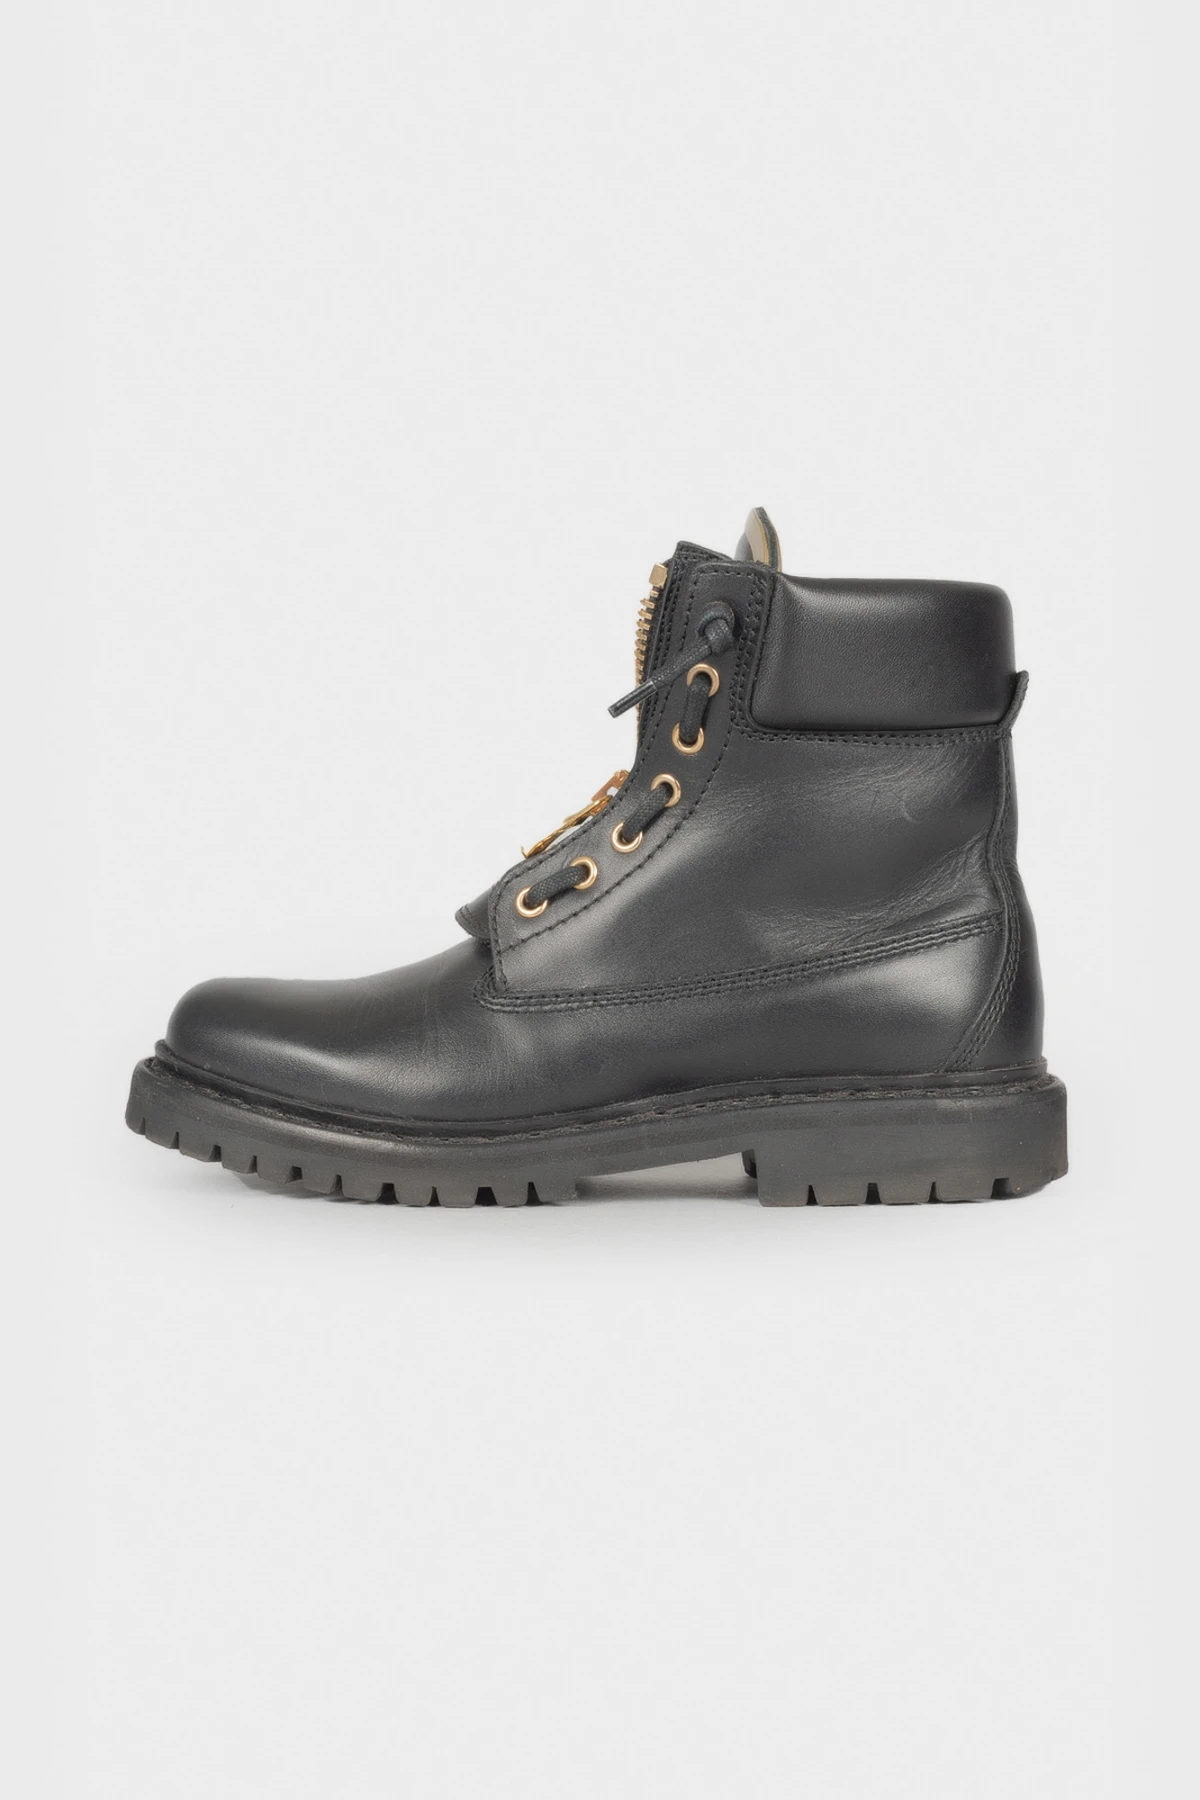 Balmain Leather boots - ReOriginal